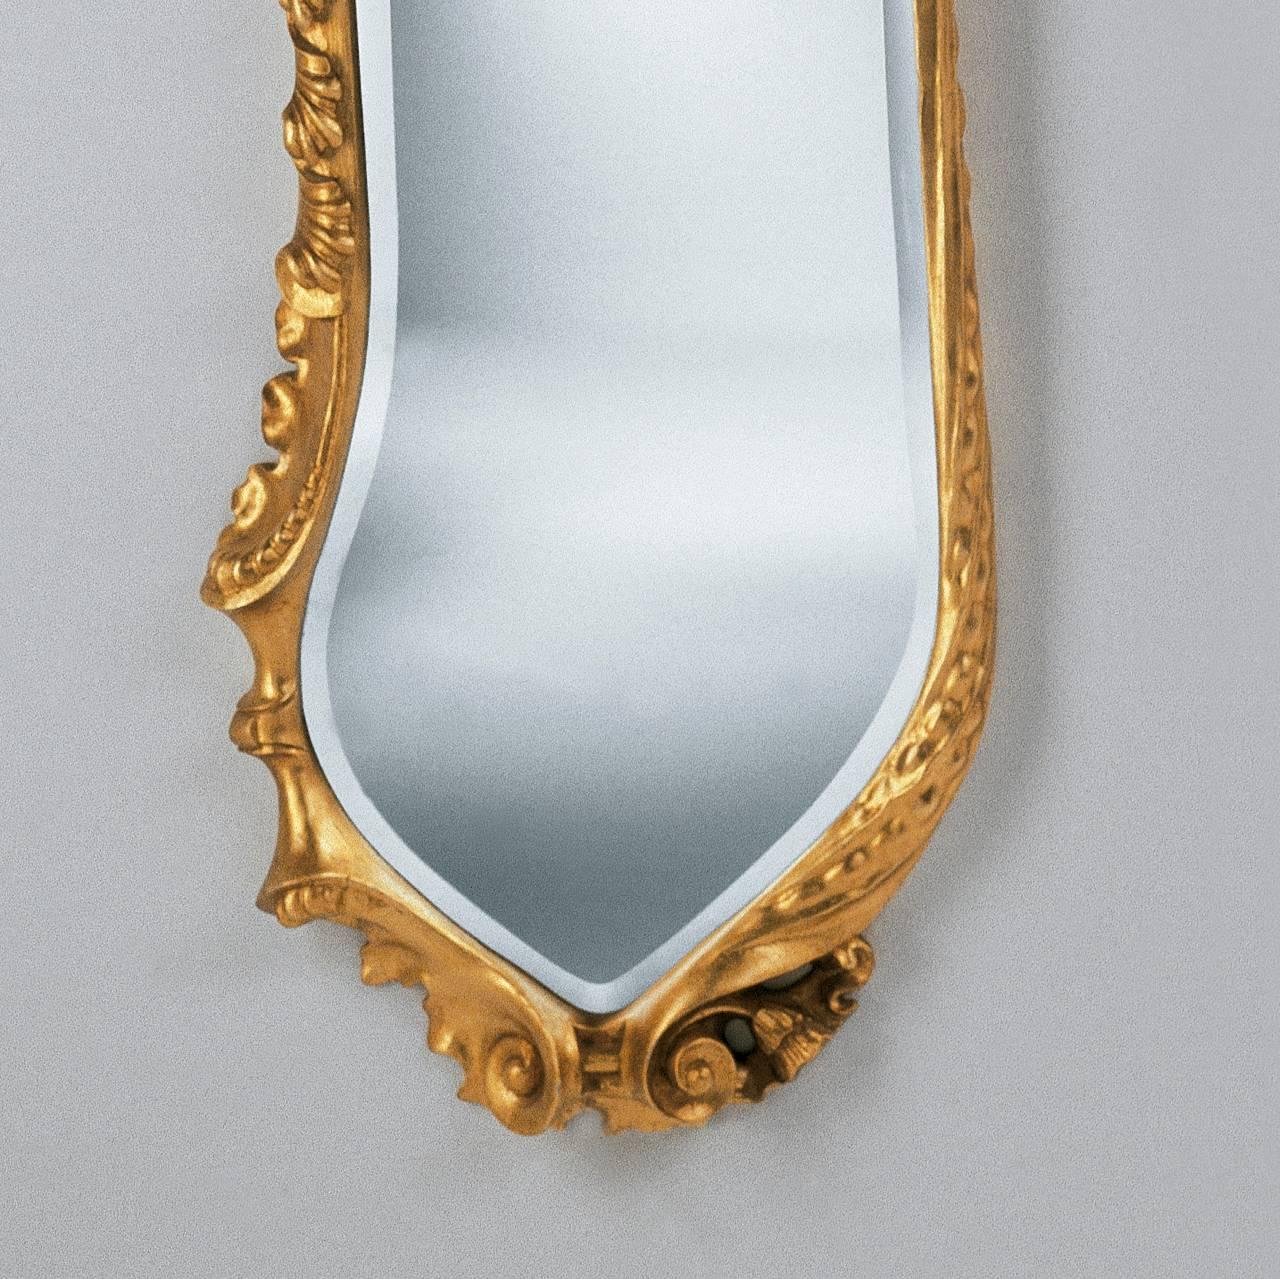 gaudi mirror design